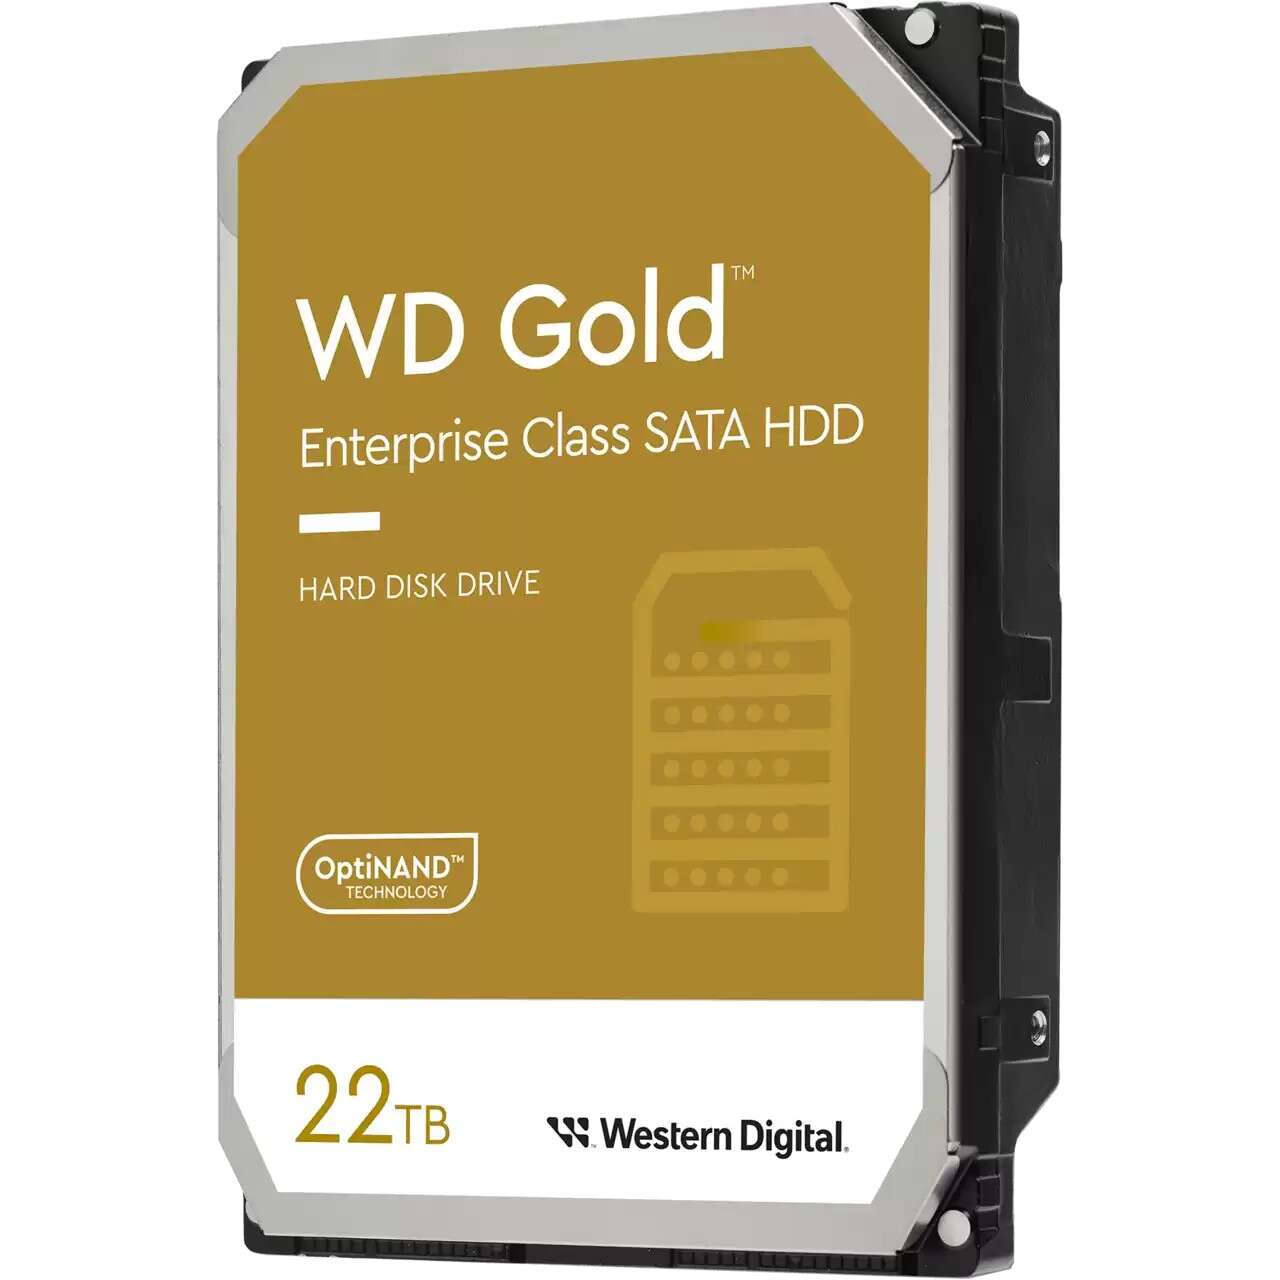 Western digital 22tb wd gold sata3 3.5" hdd